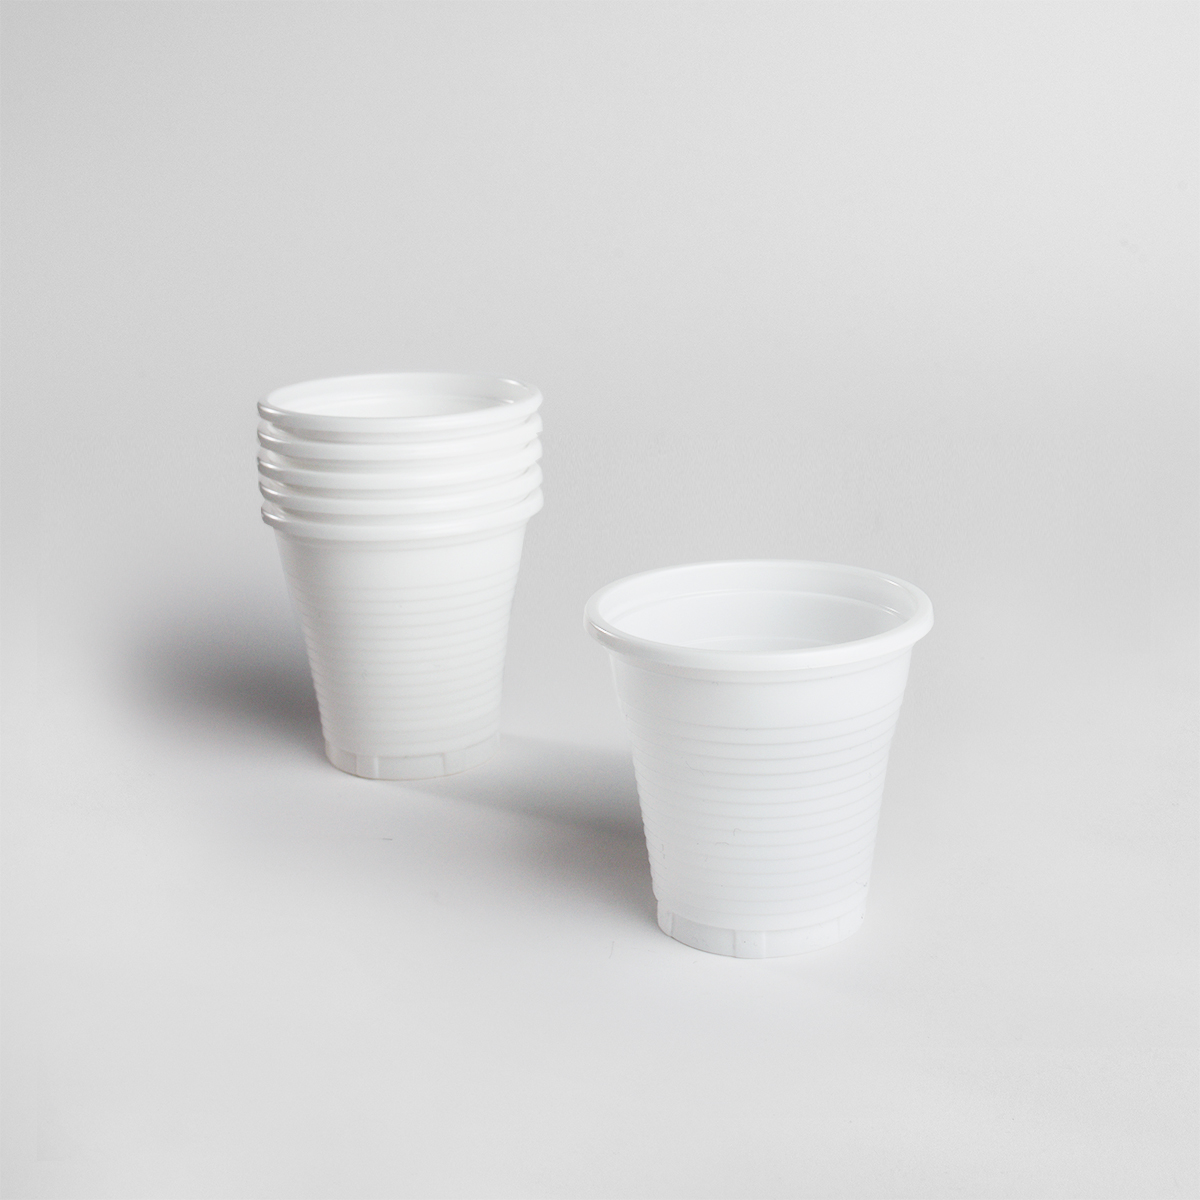 Cup (1500 pieces)